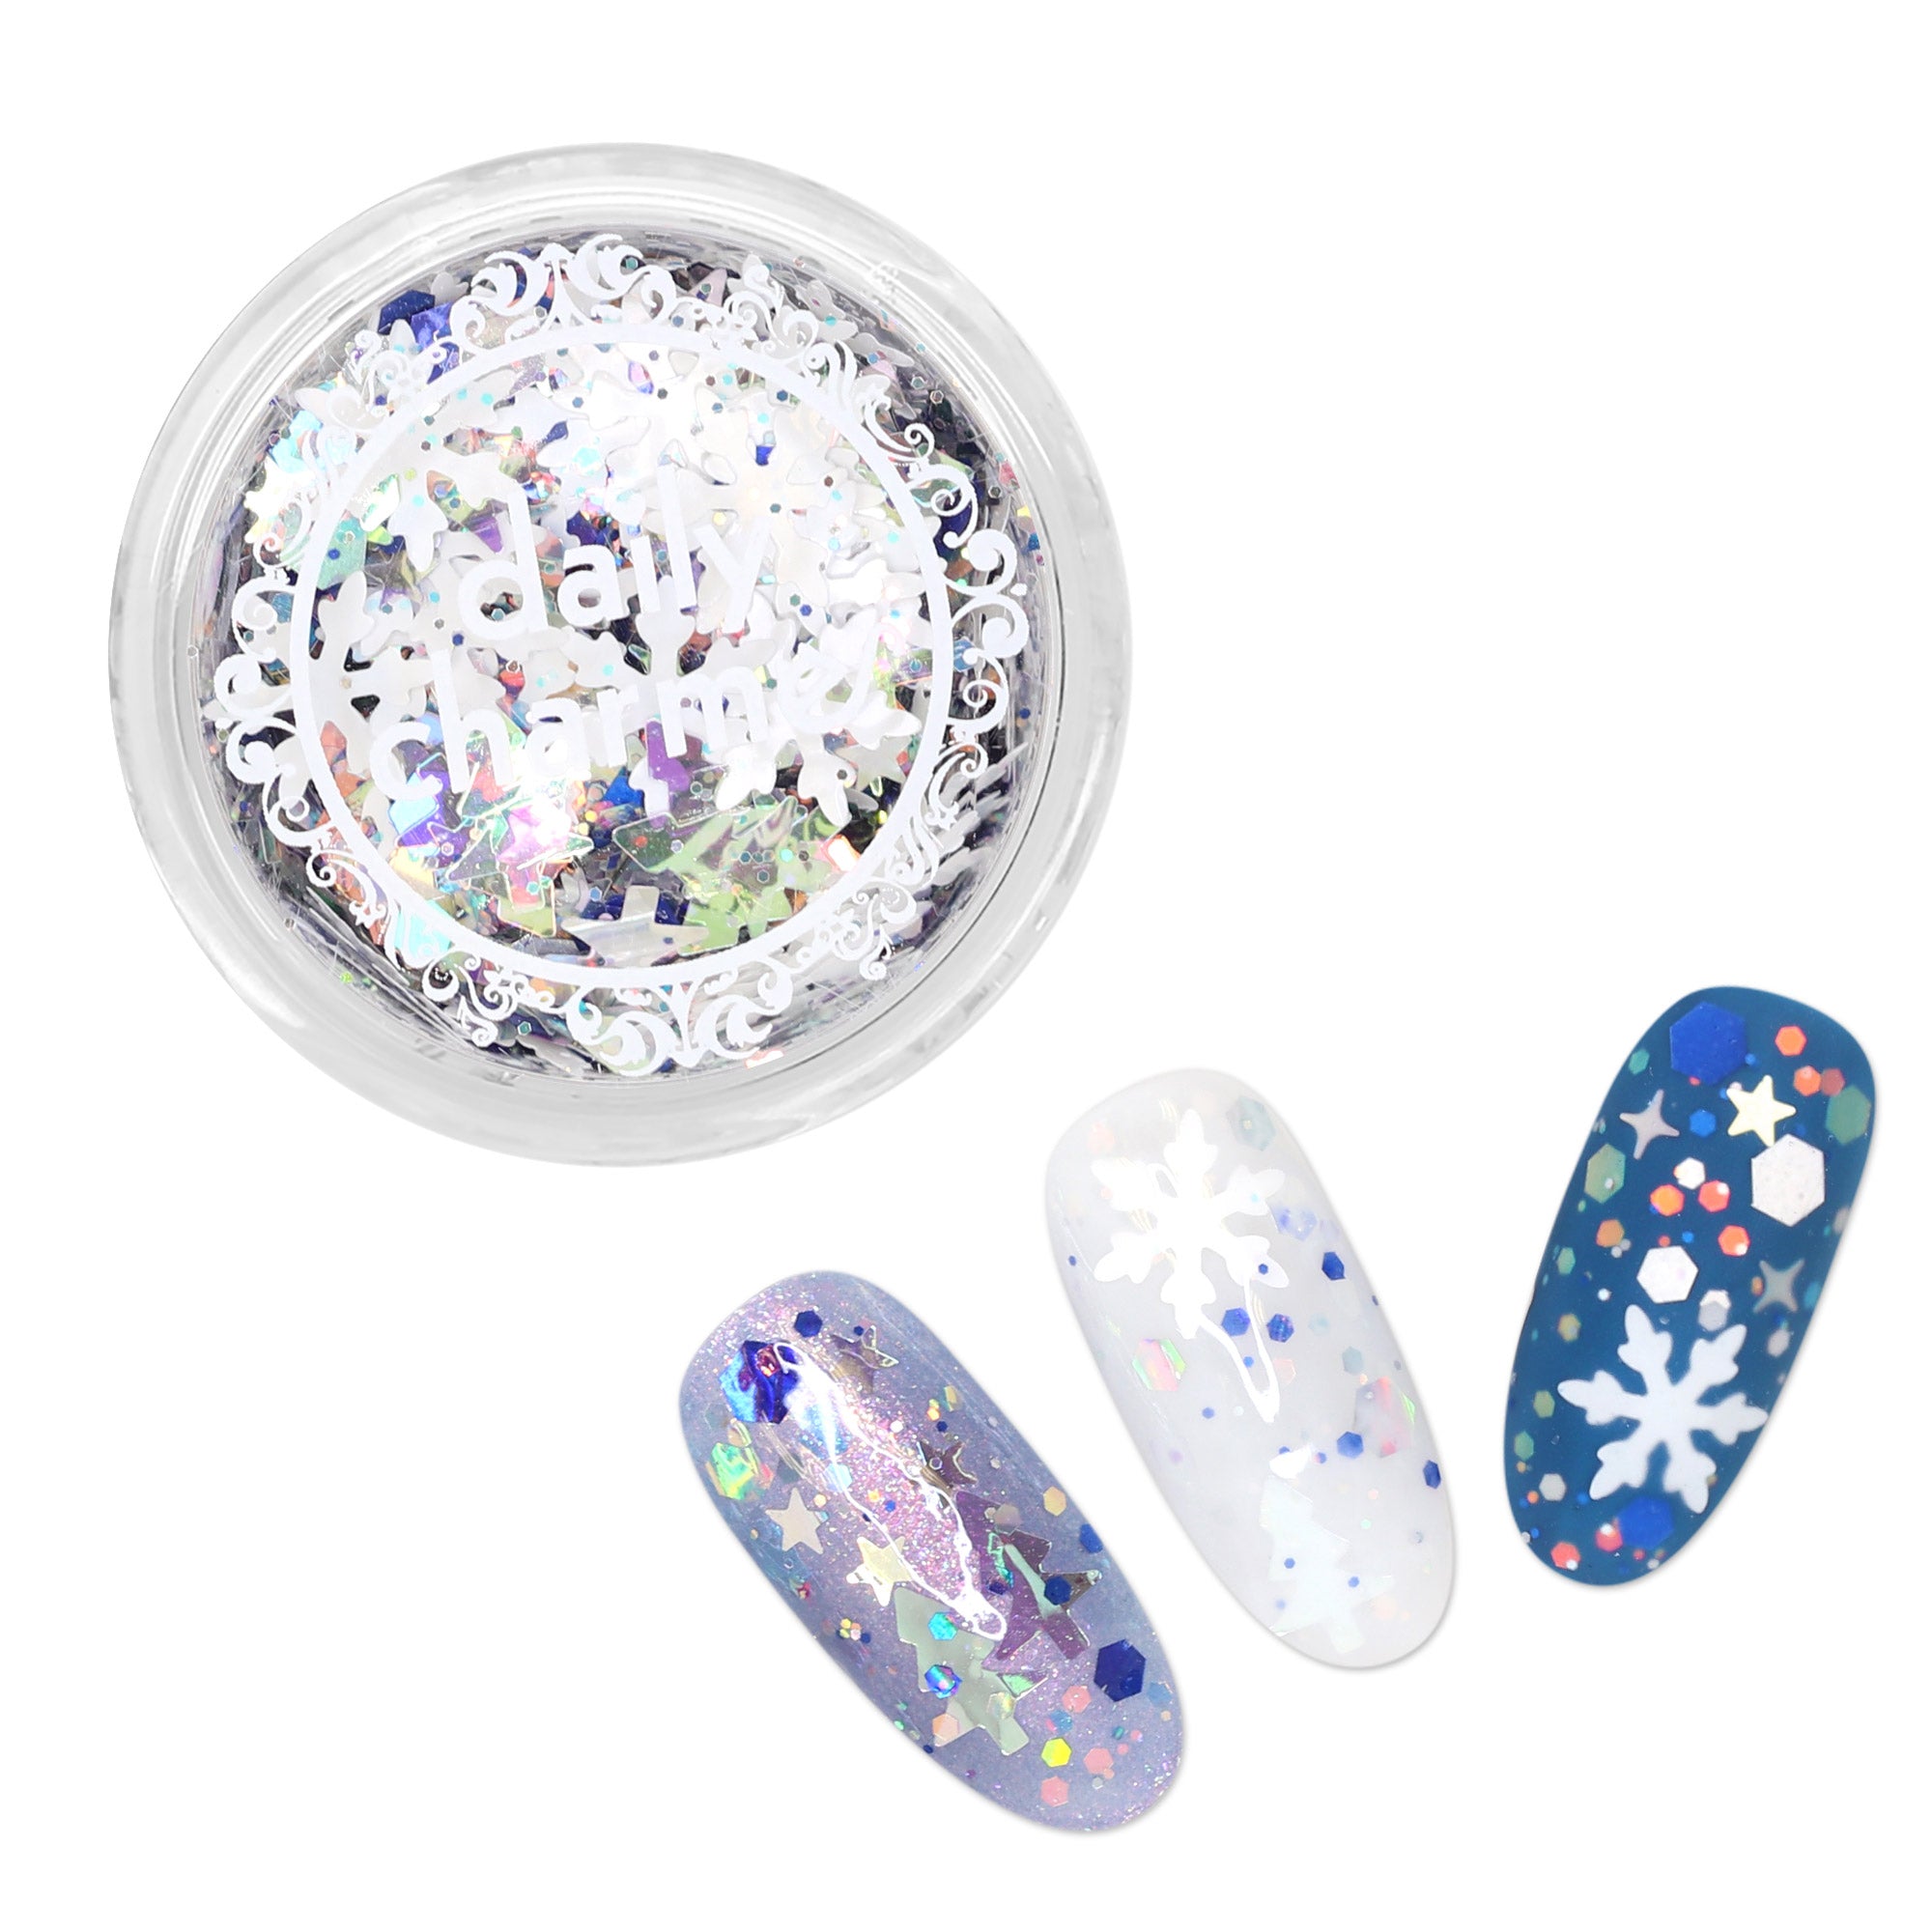 NAIL ART Glitter Snow Flake Mixed SP57-02 - TDI, Inc